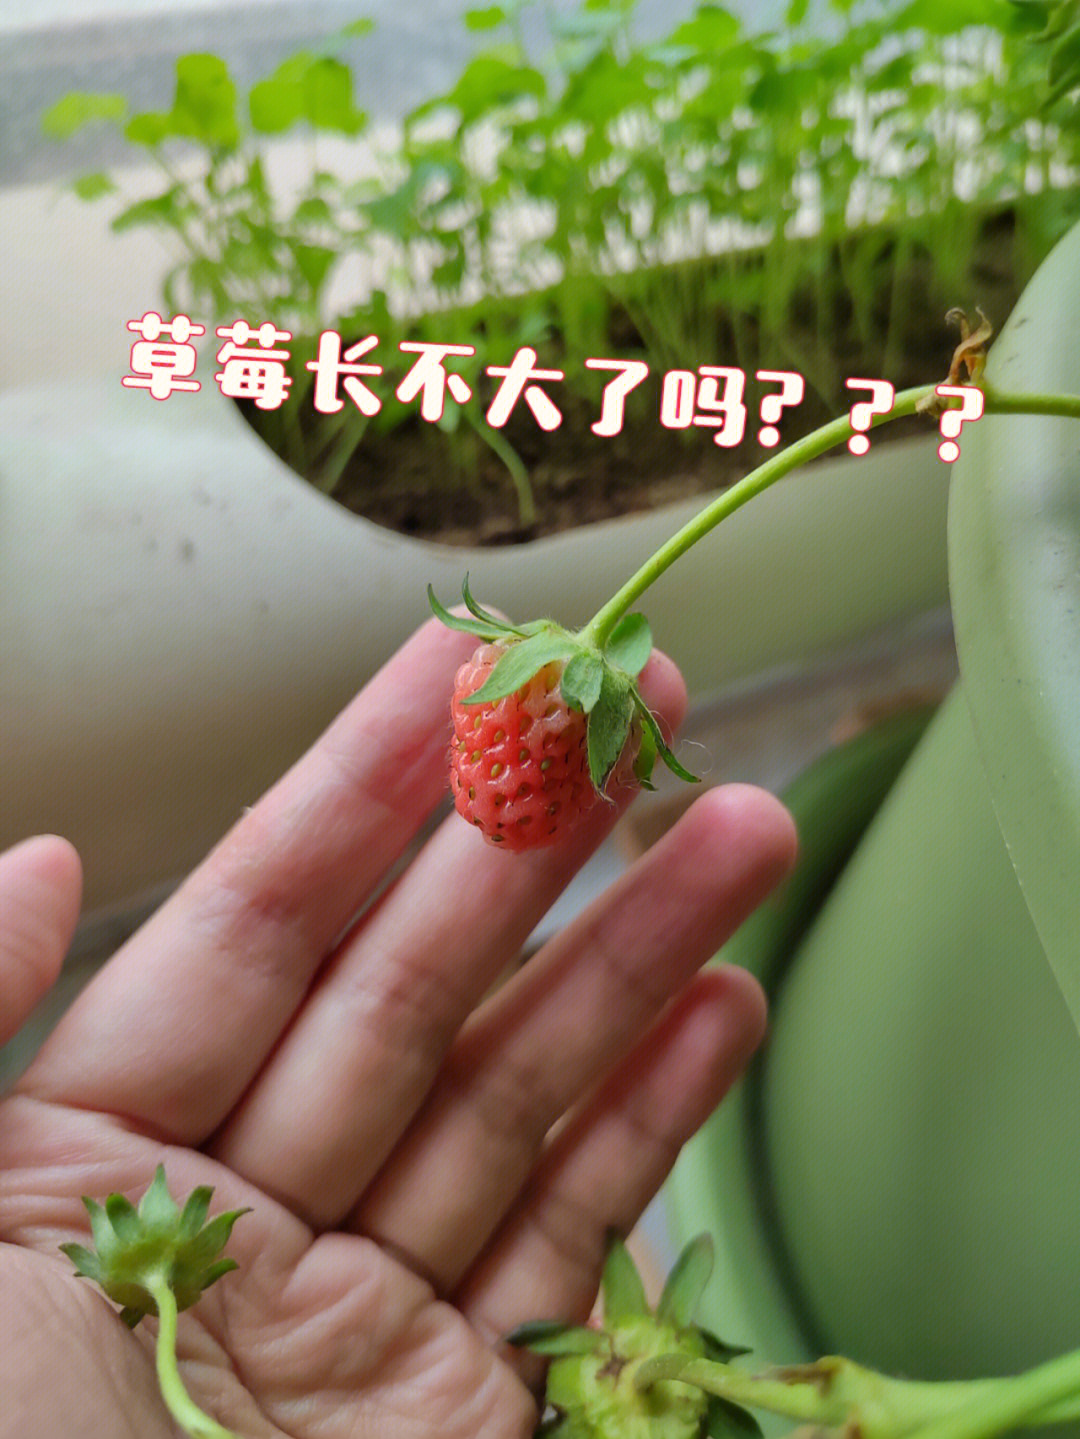 为什么草莓不长大就开始红了而且难吃01